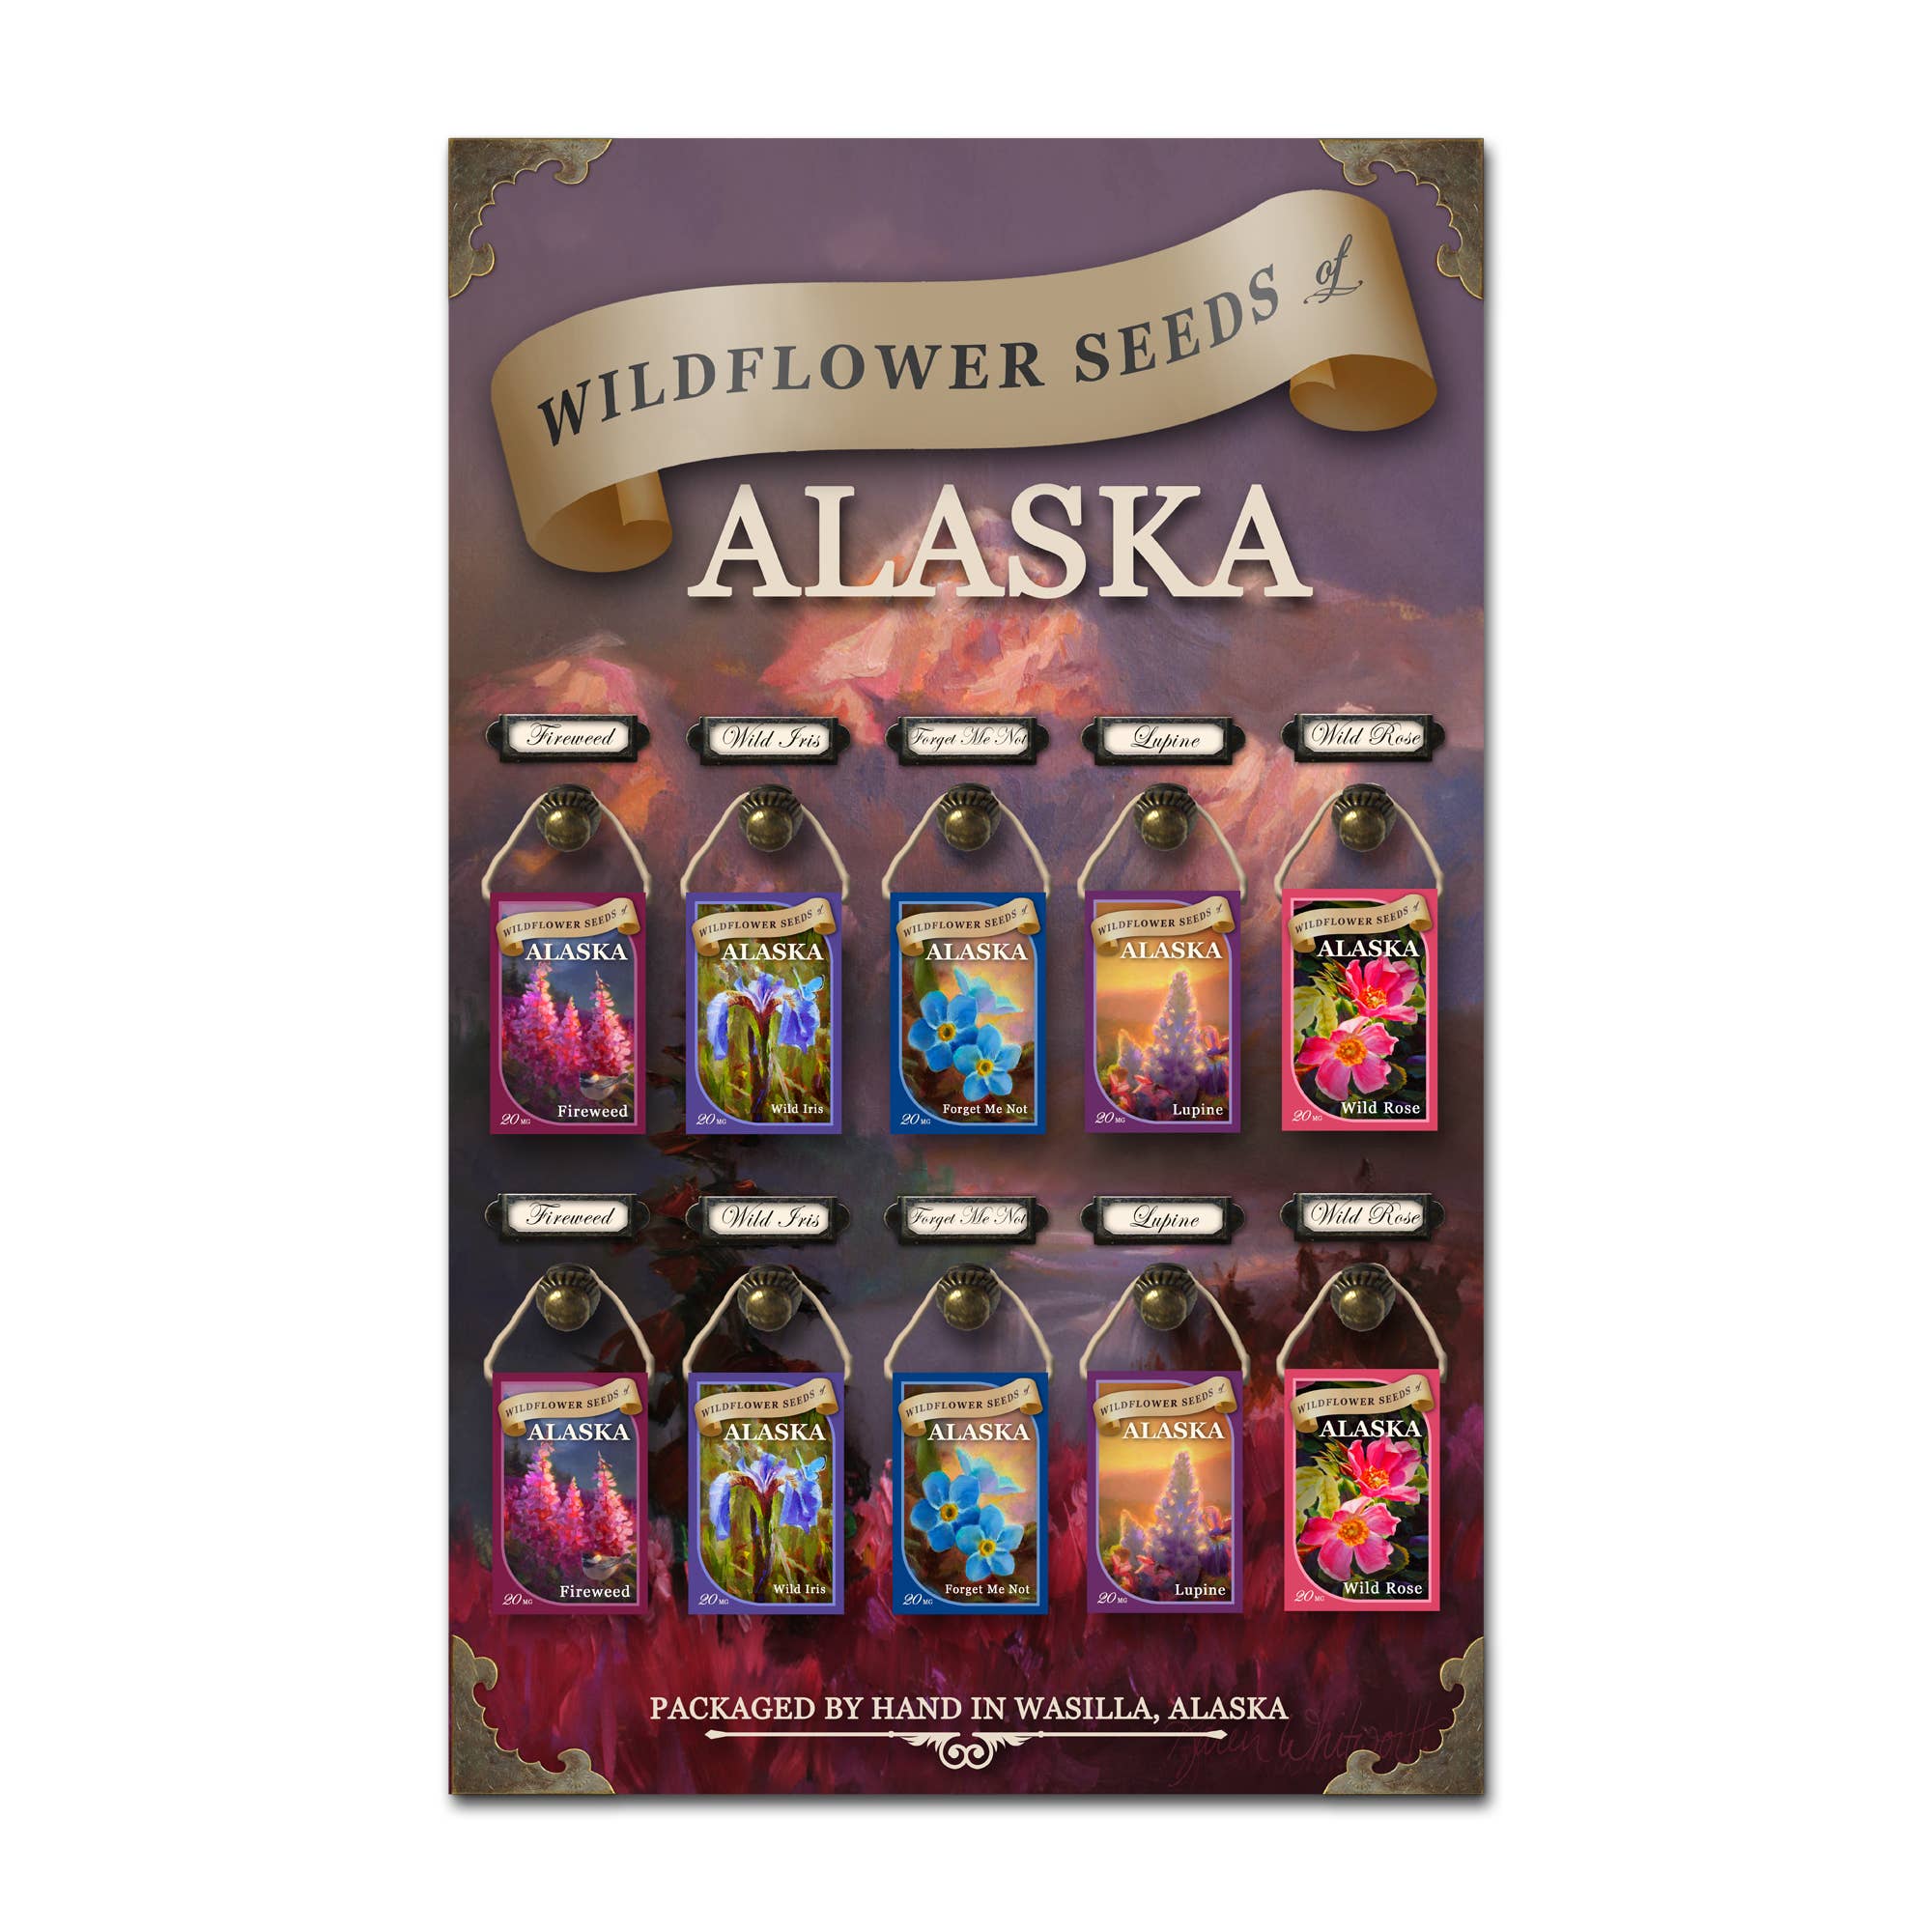 Alaskan Wildflower Seed Packets Display